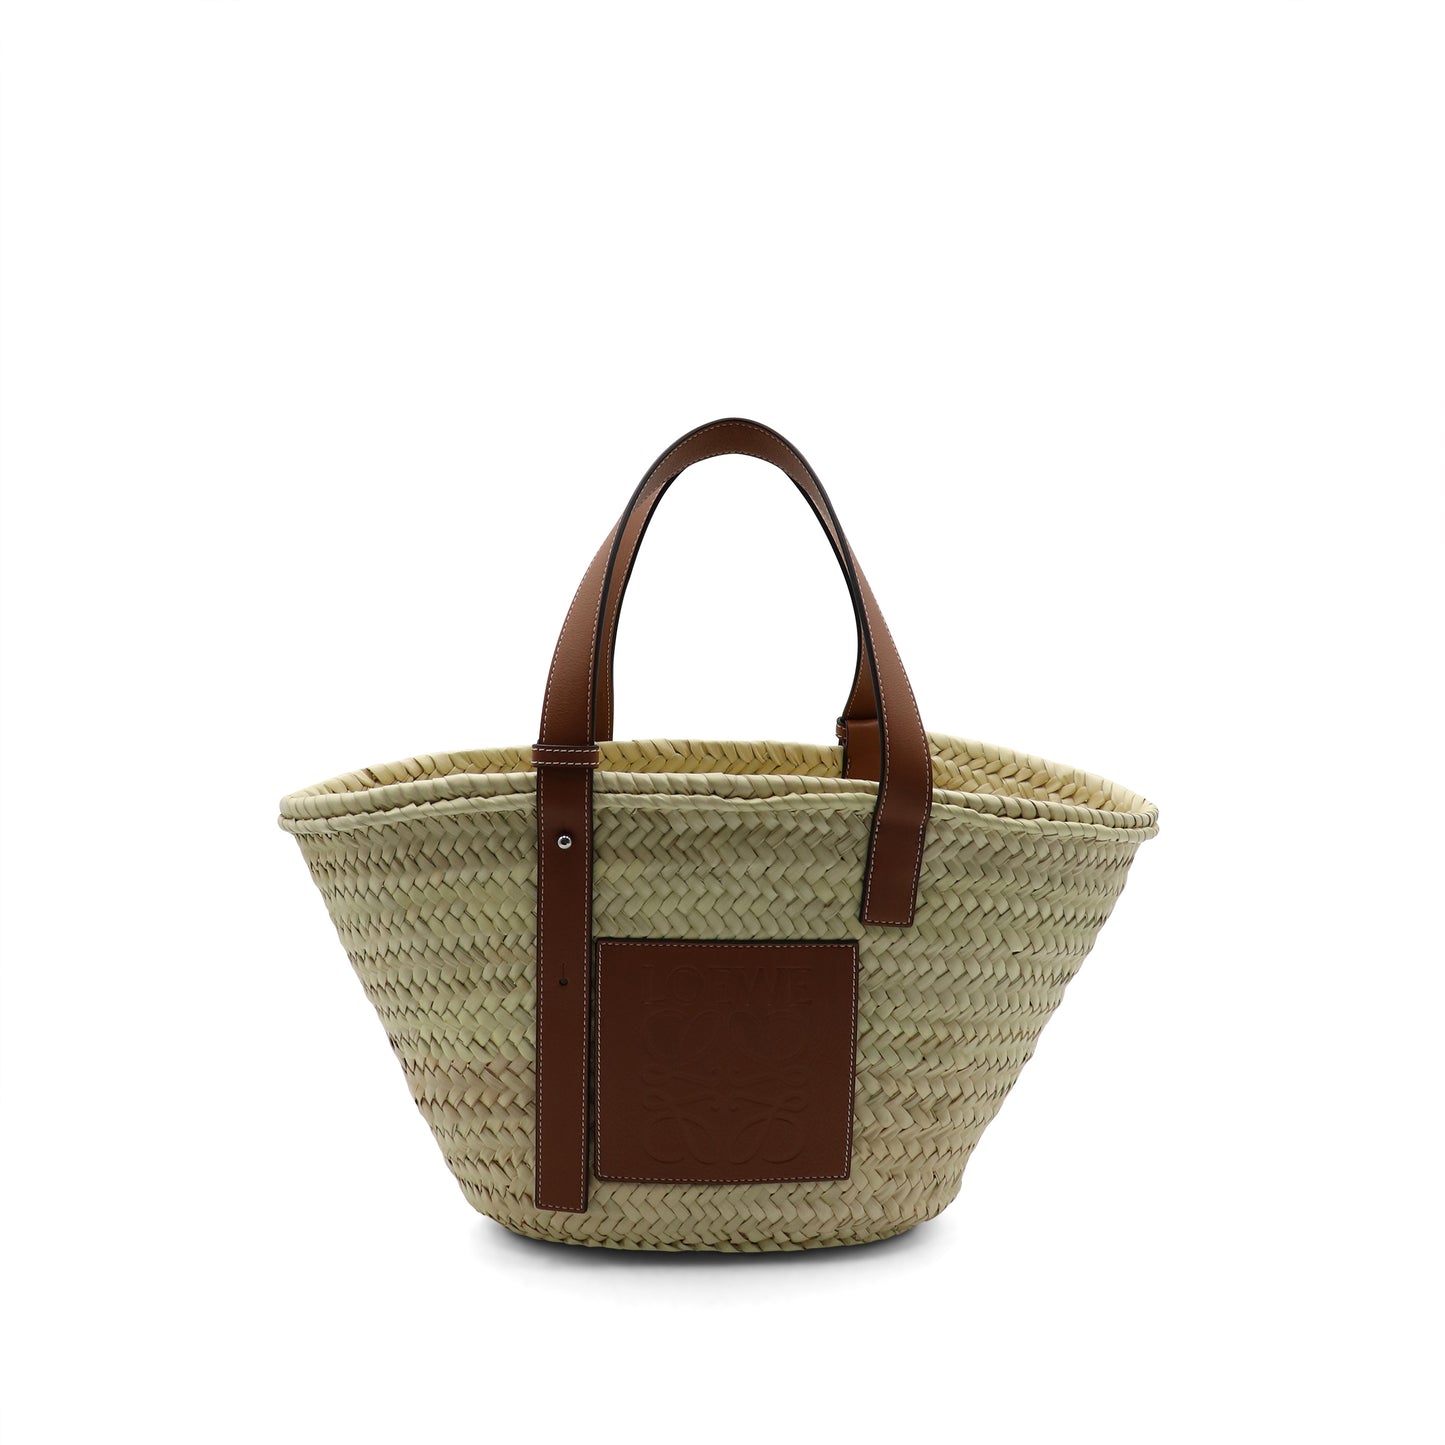 LOEWE Medium Basket Bag in Palm Leaf and Calfskin in Natural/Tan | – MARAIS